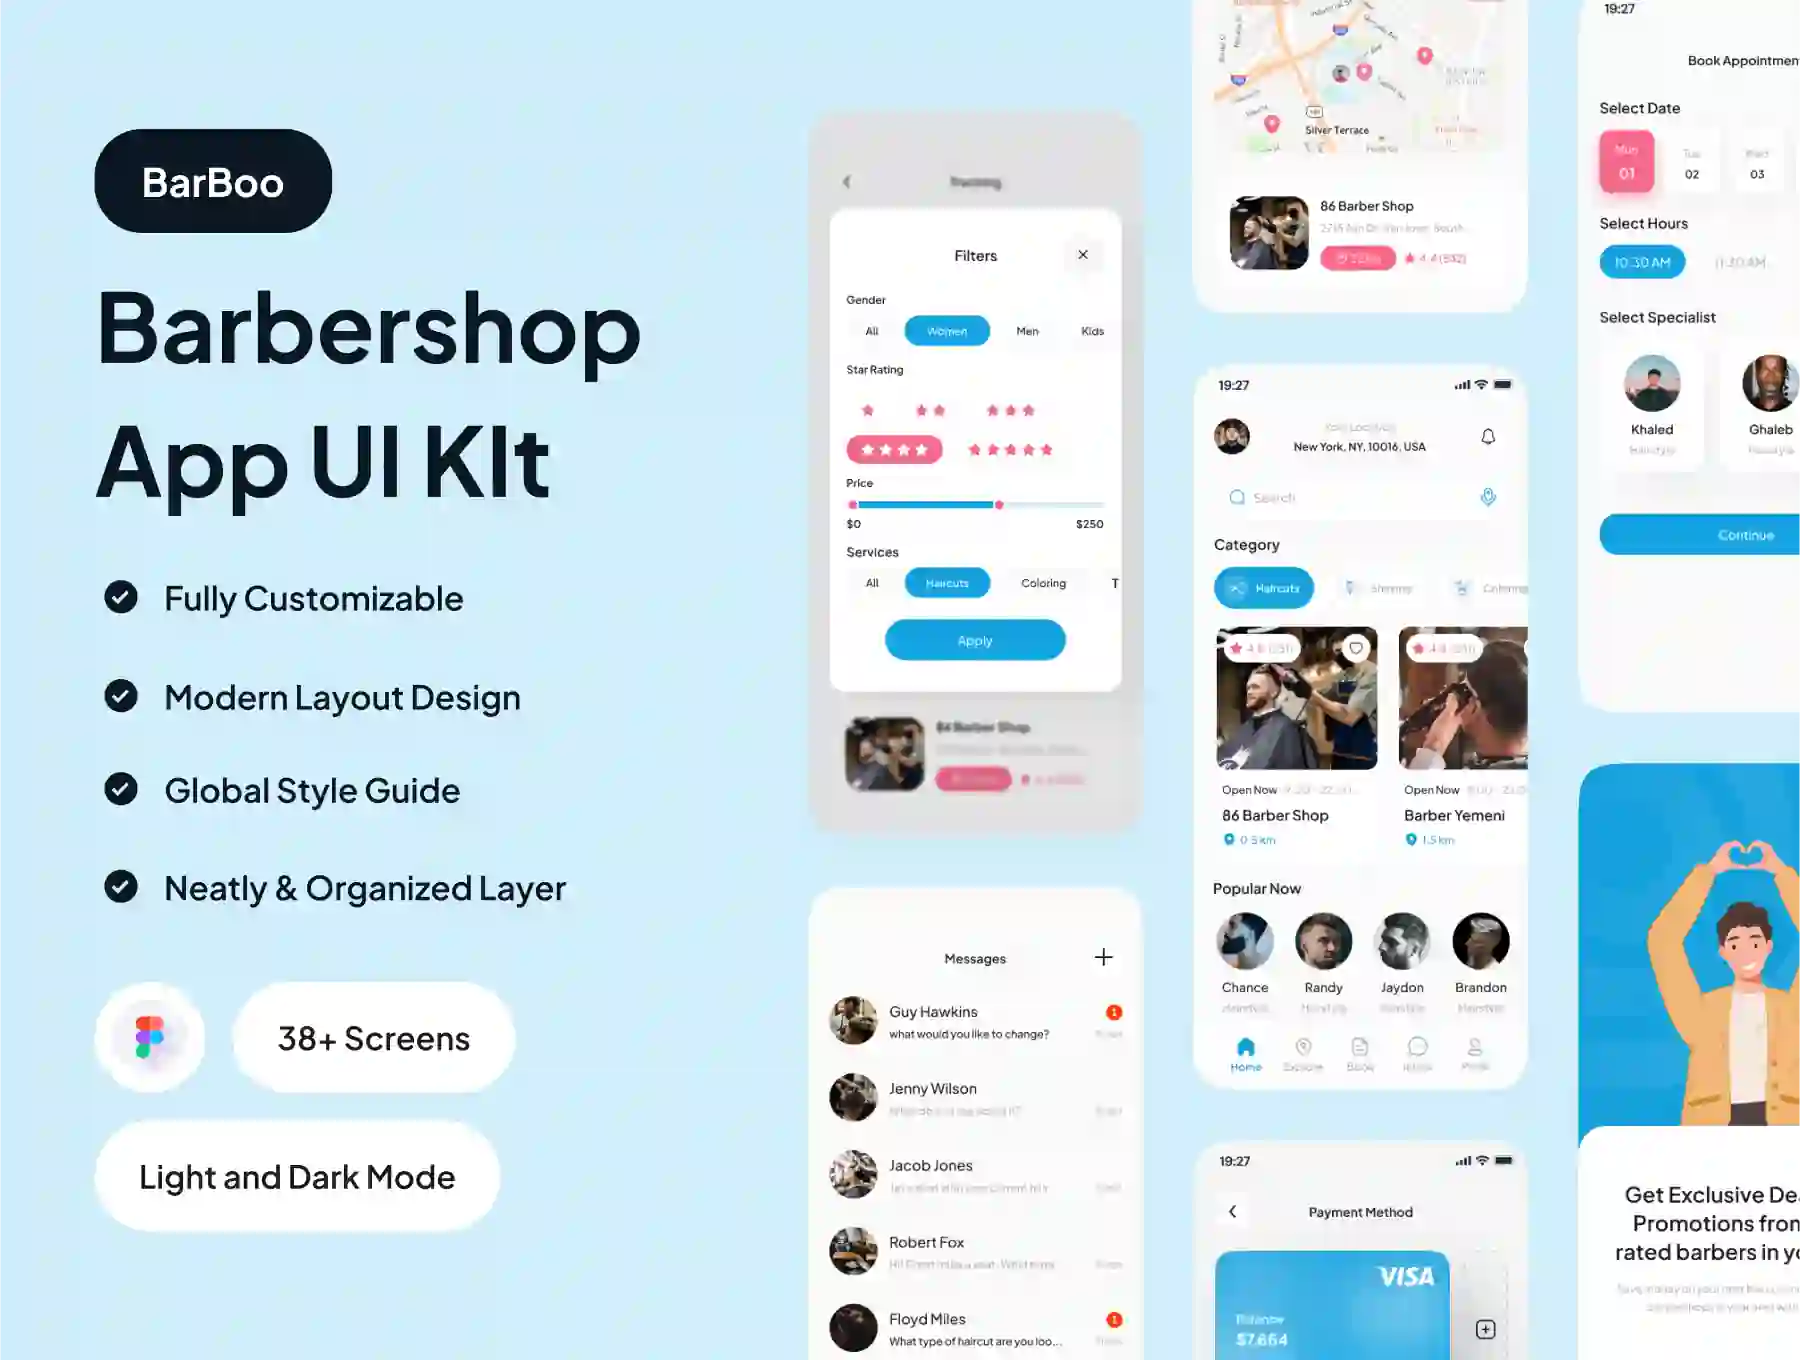 Barboo - Barbershop App UI Kit